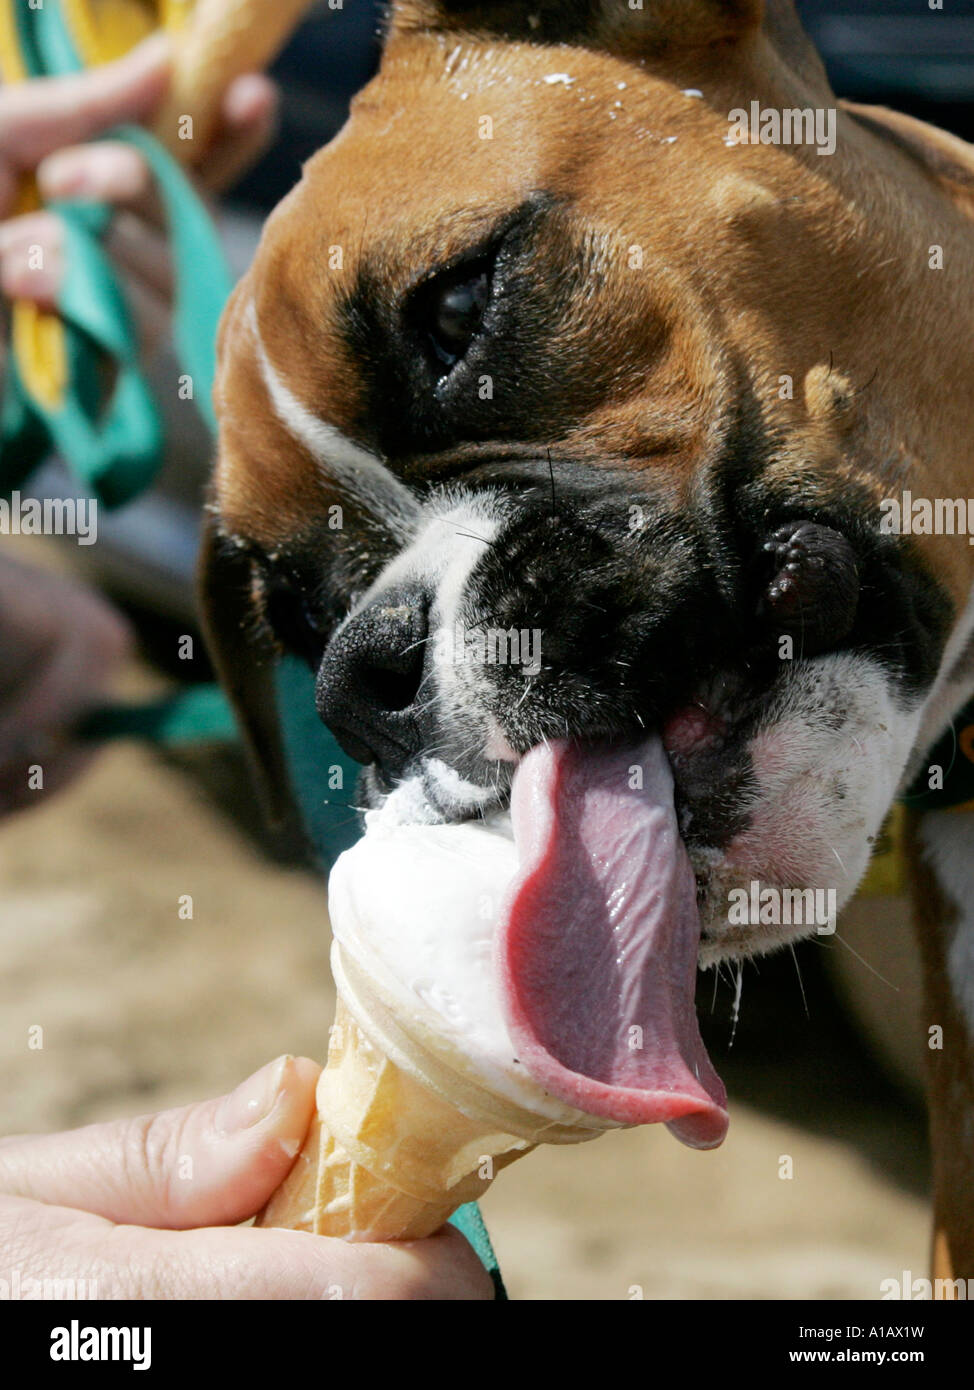 A boxer licking an icecream - a hotdog. Stock Photo